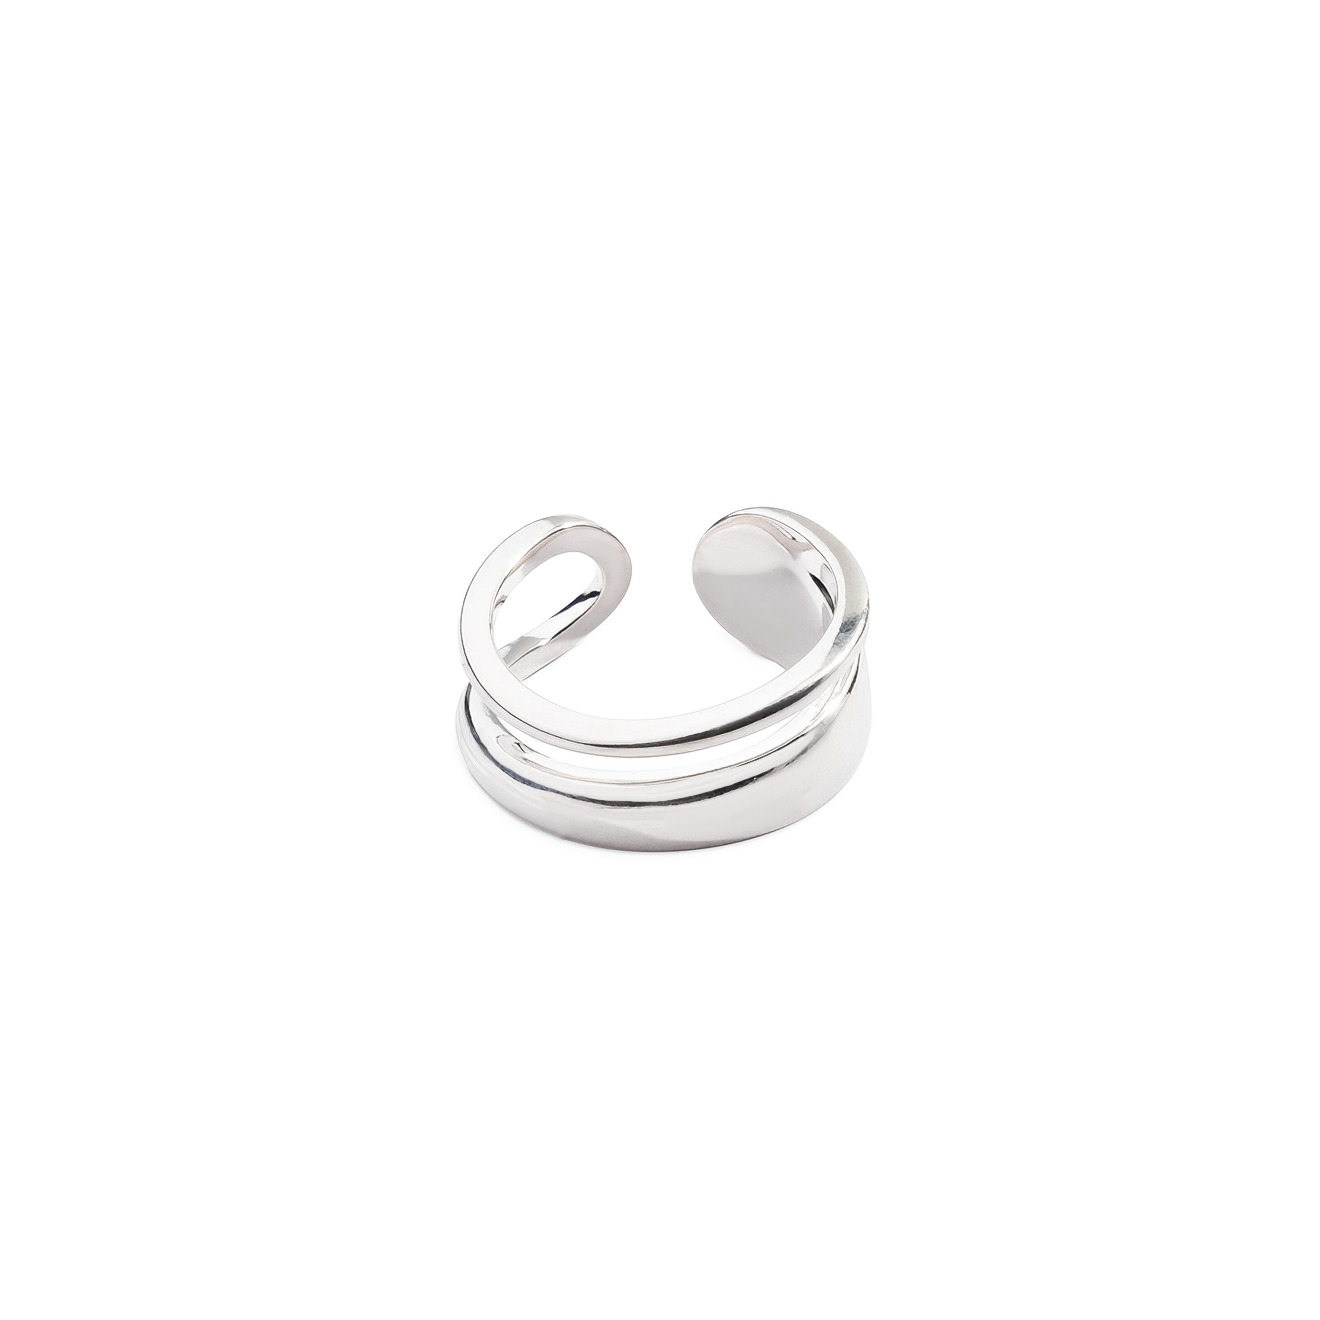 Philippe Audibert Незамкнутое двойное кольцо, покрытое серебром lisa smith незамкнутое серебристое кольцо волна